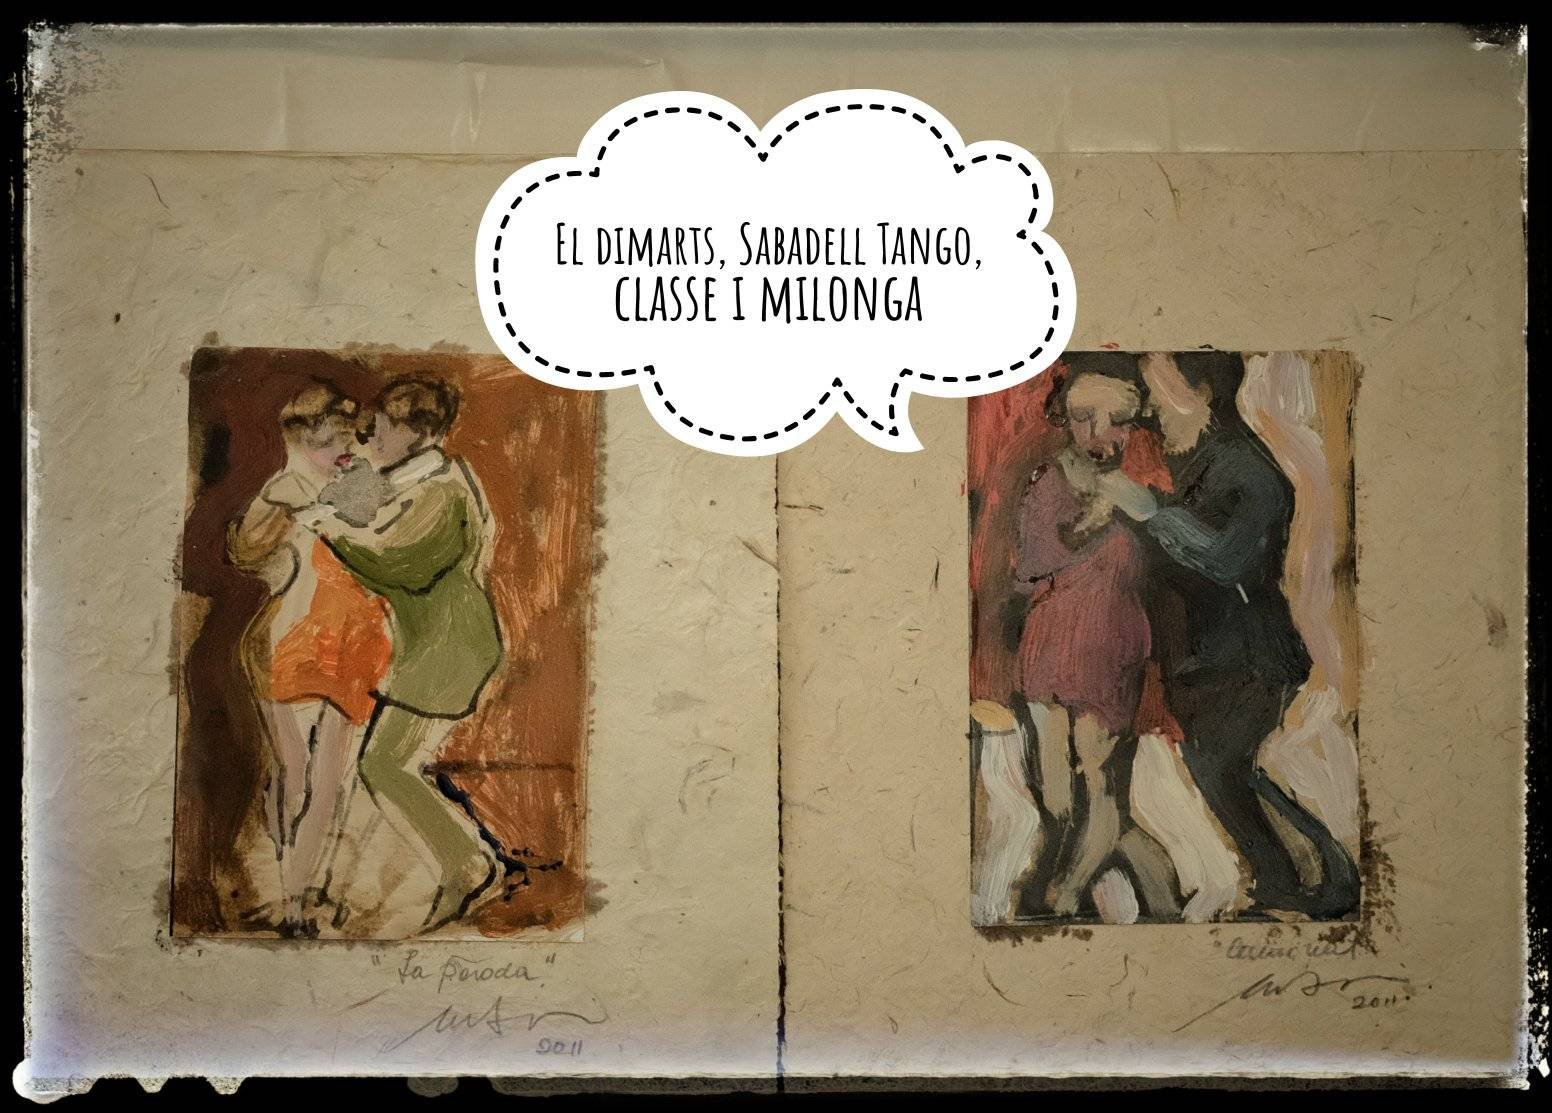 Sabadell Tango